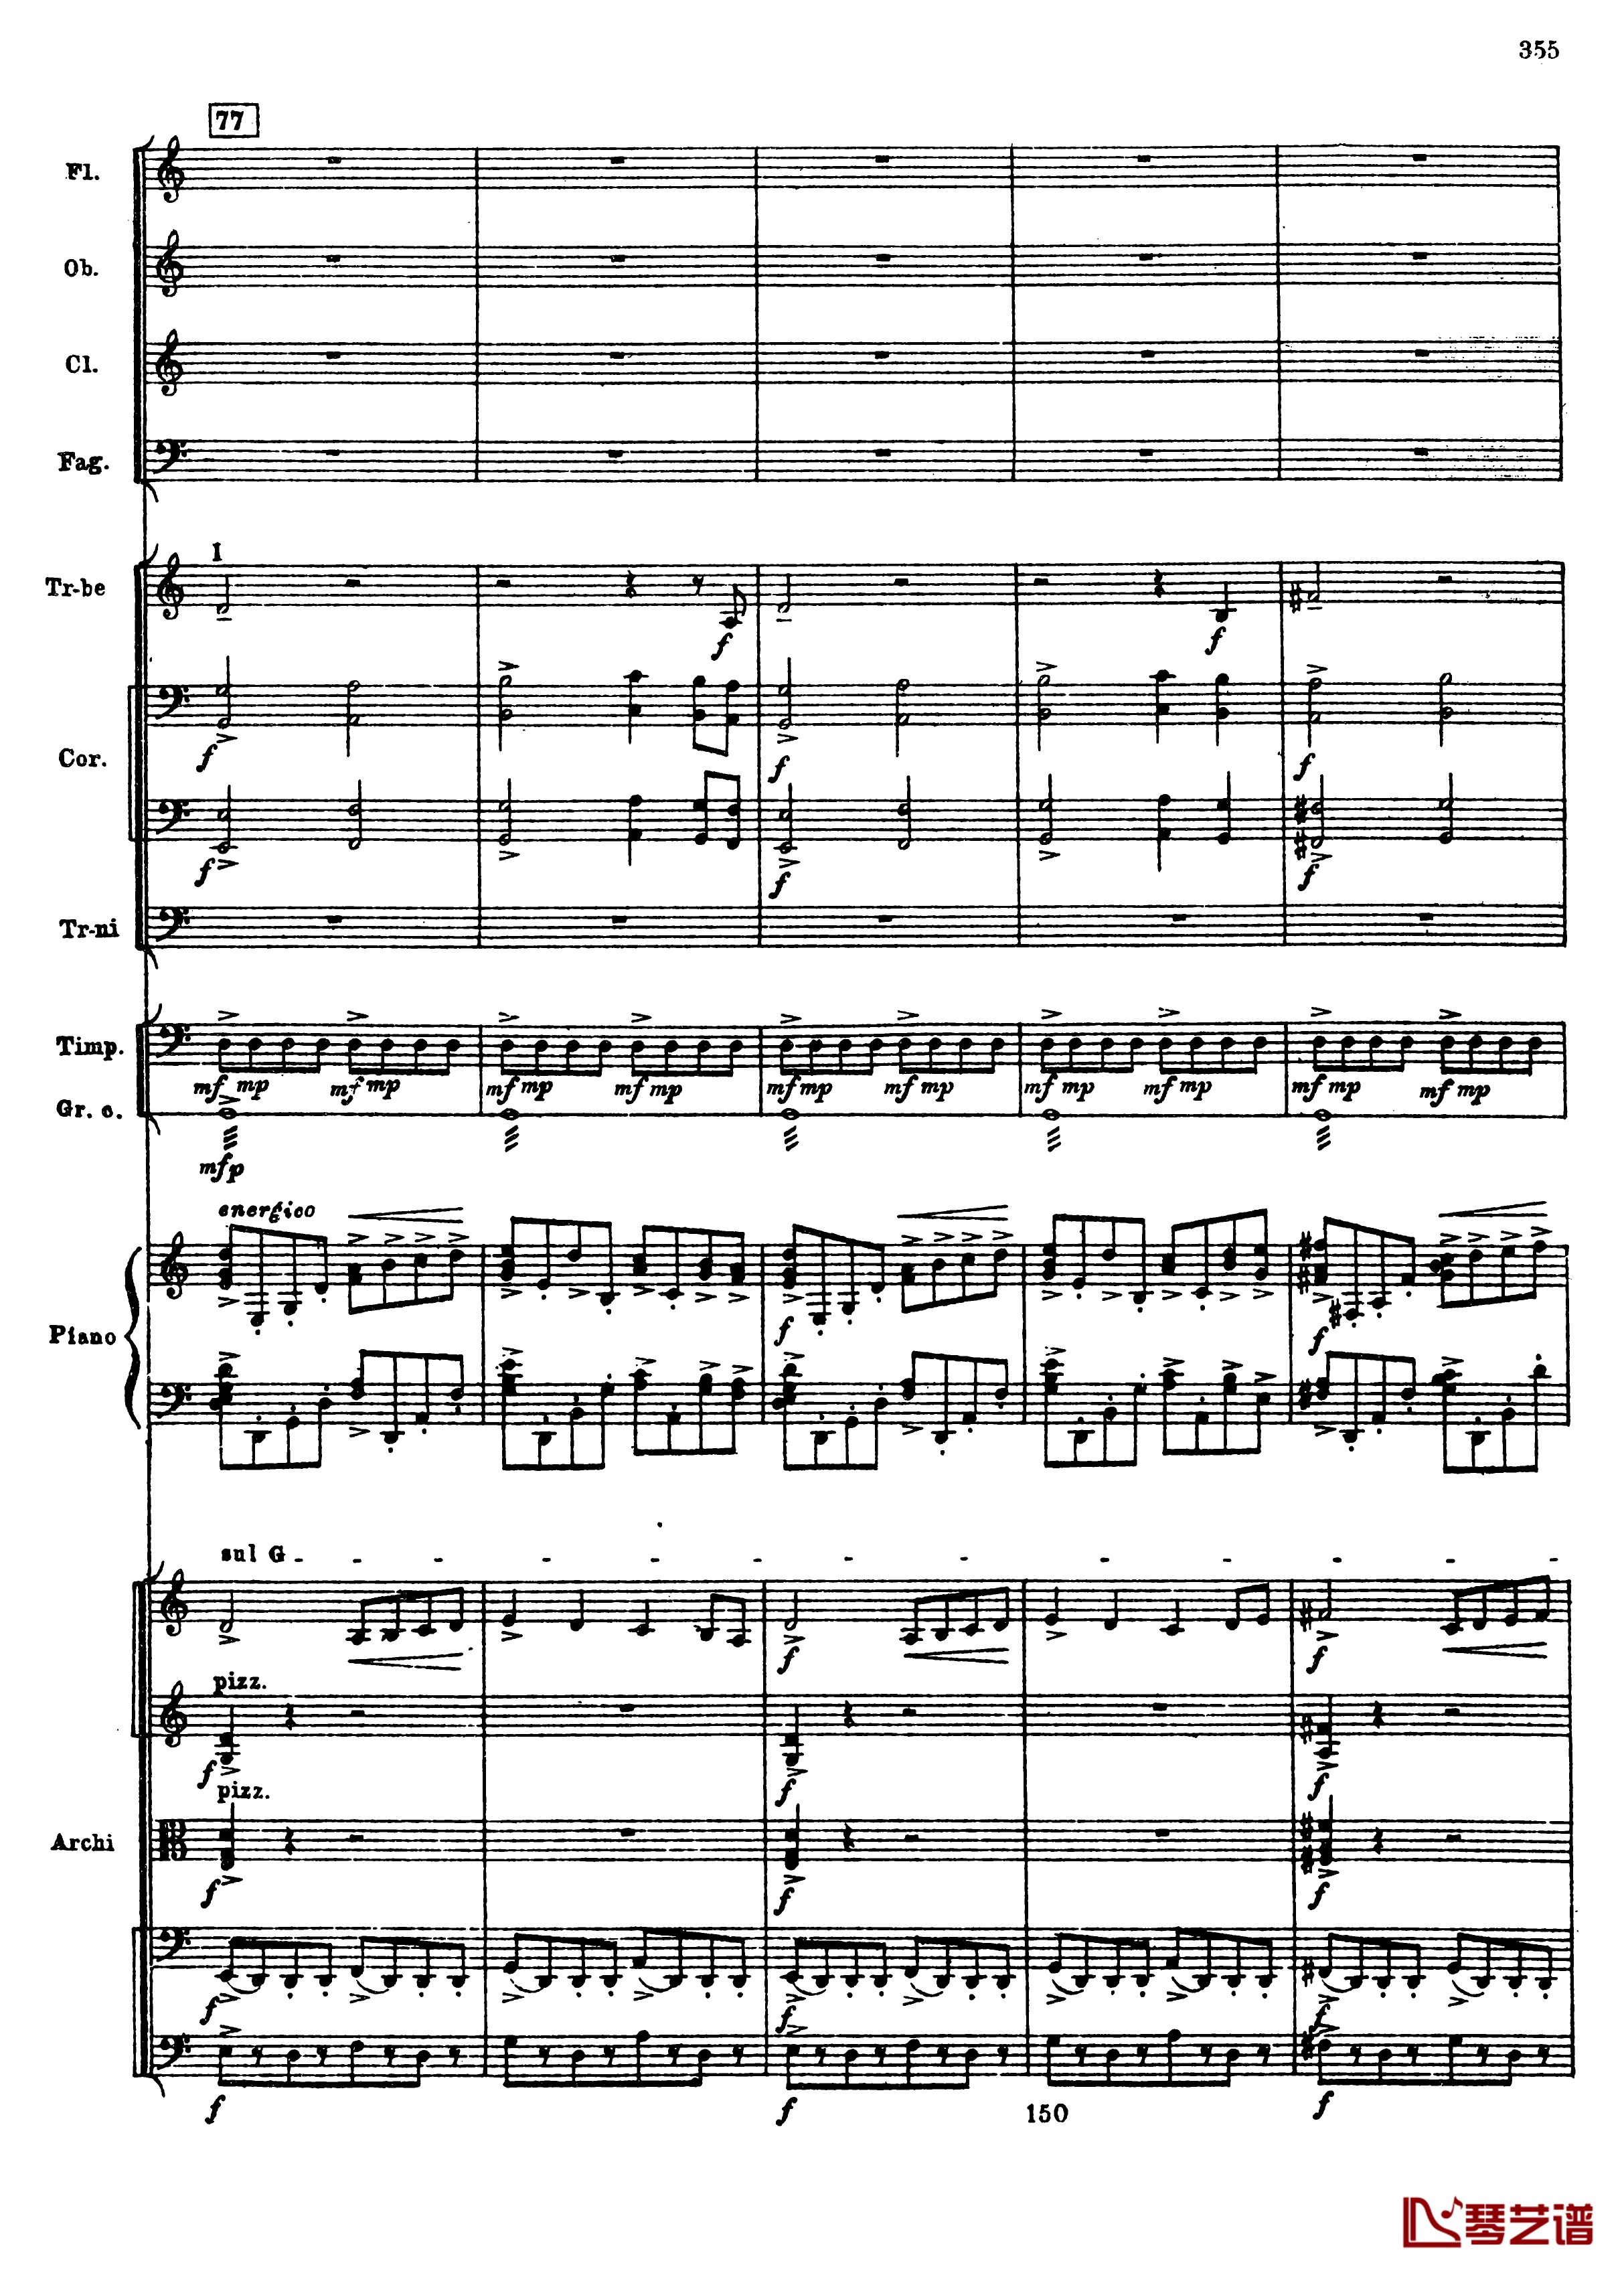 普罗科菲耶夫第三钢琴协奏曲钢琴谱-总谱-普罗科非耶夫87